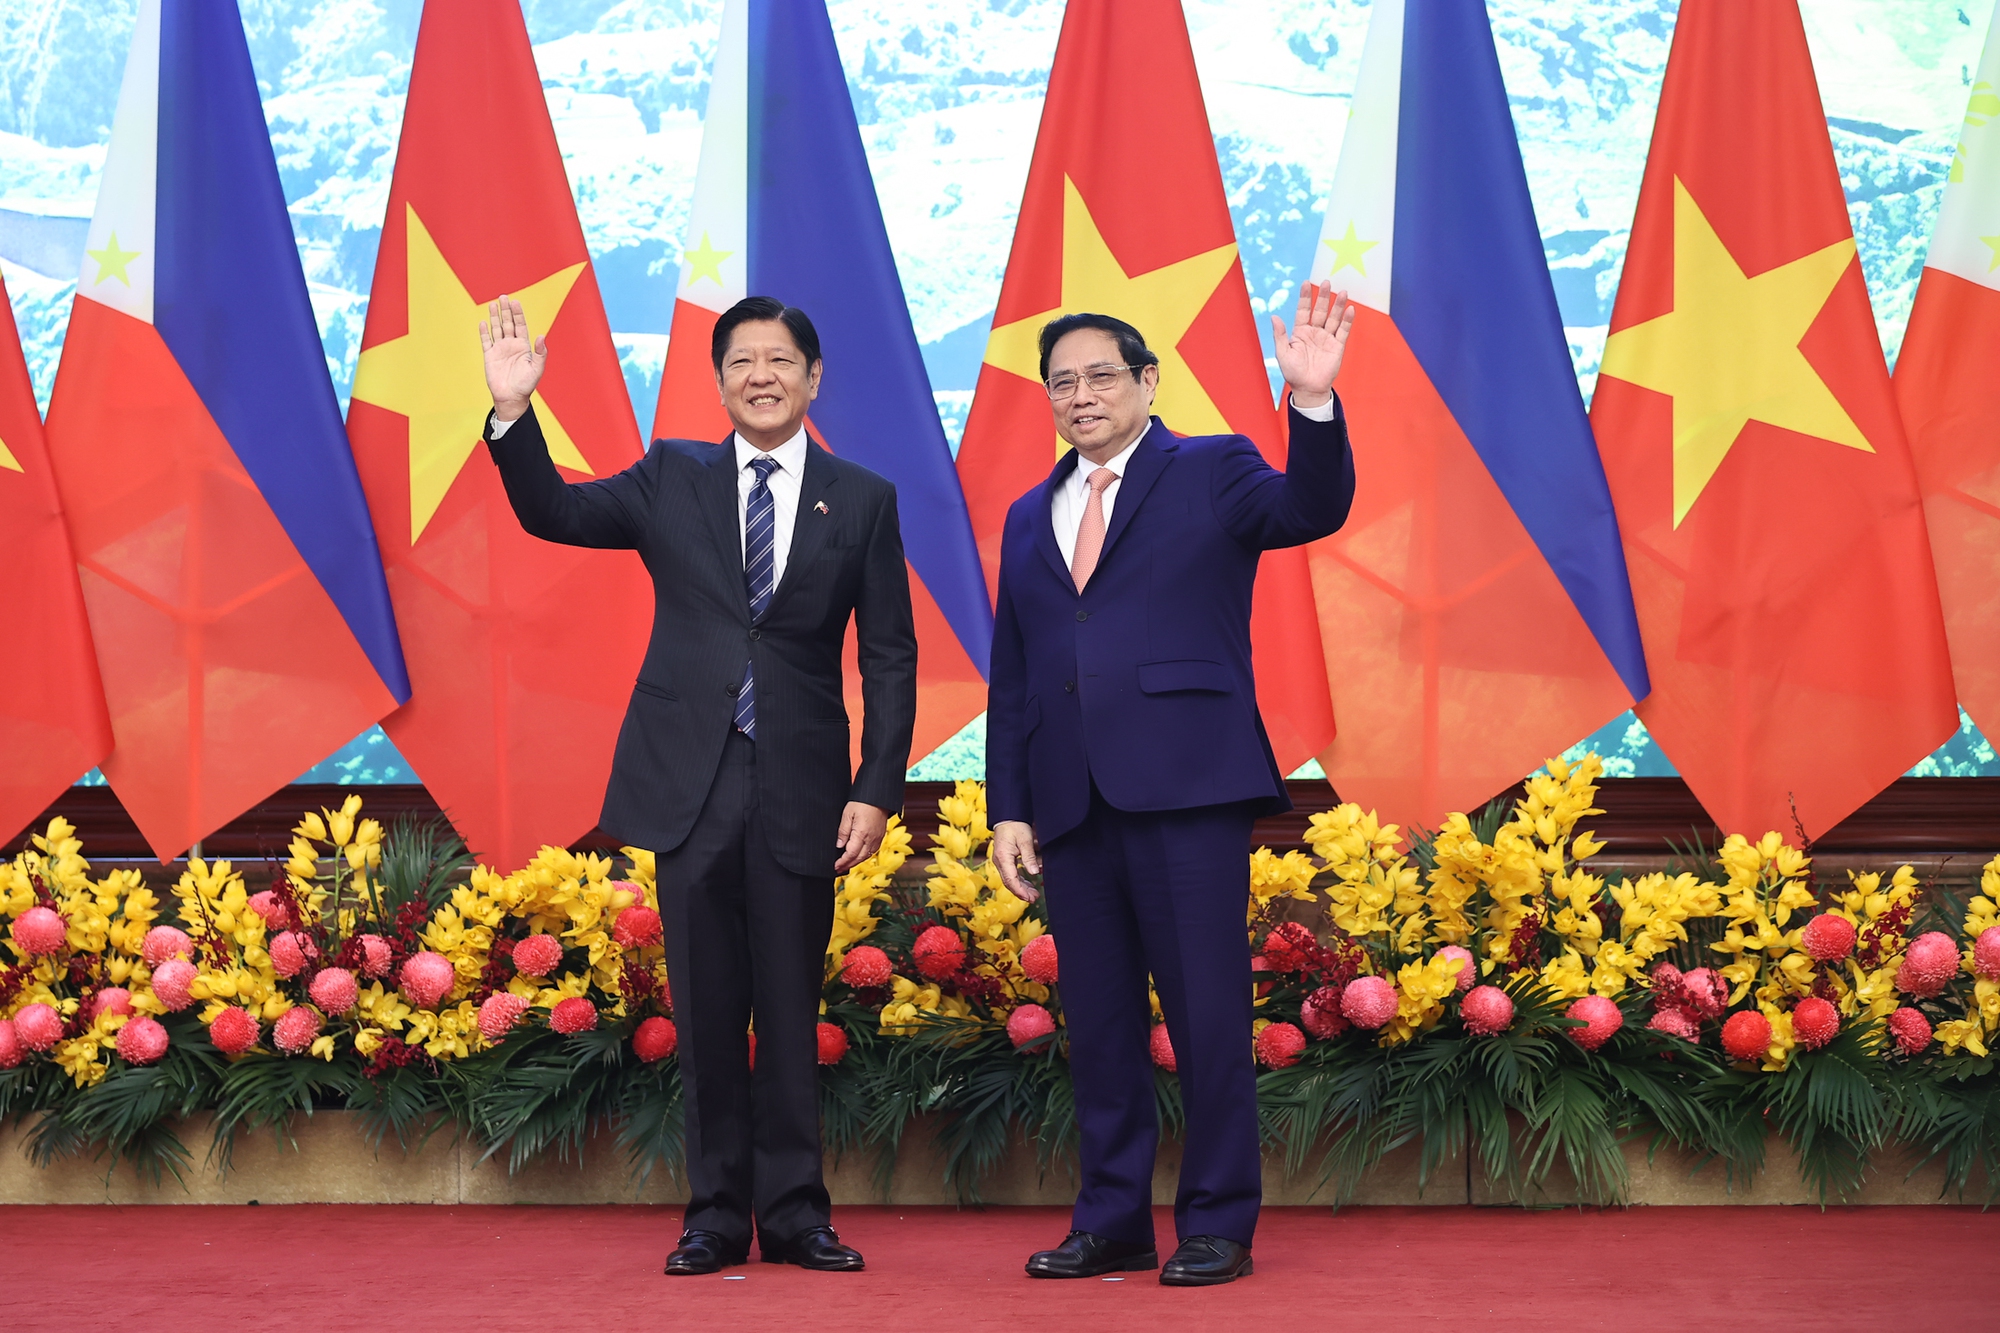 Thủ tướng Phạm Minh Chính hoan nghênh Tổng thống Marcos Jr. lần đầu tiên thăm cấp Nhà nước tới Việt Nam - Ảnh: VGP/Nhật Bắc